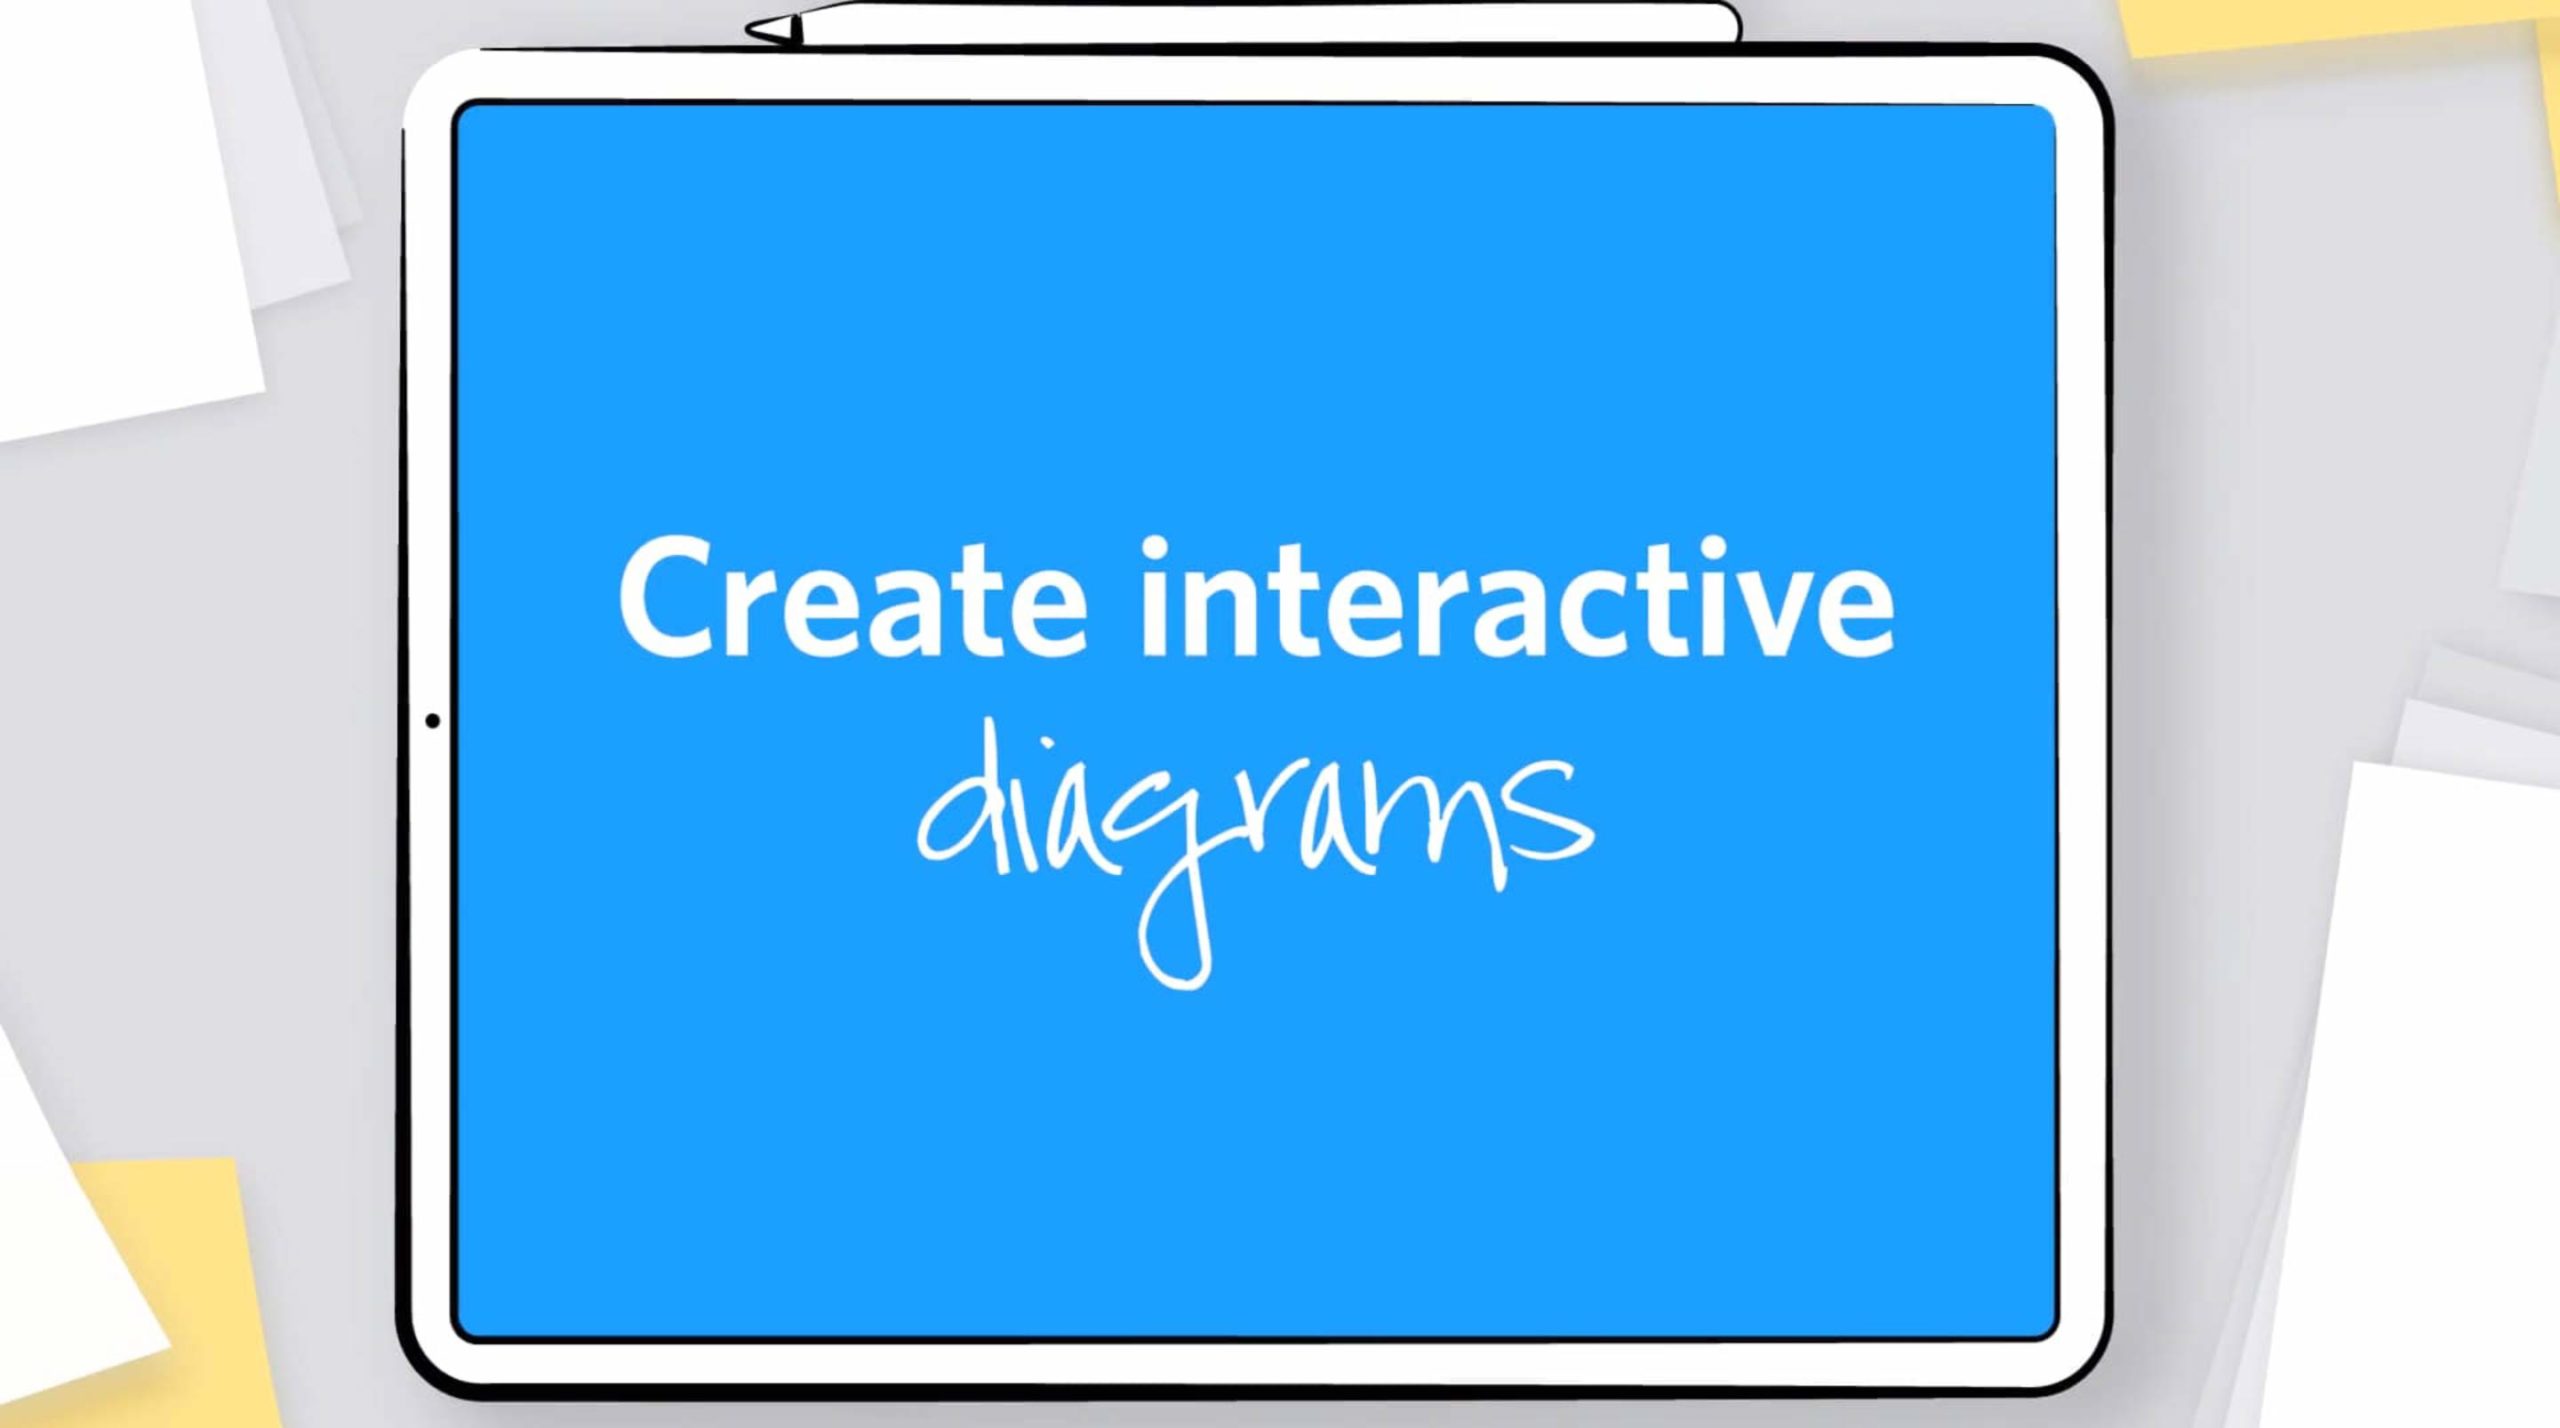 Create interactive diagrams